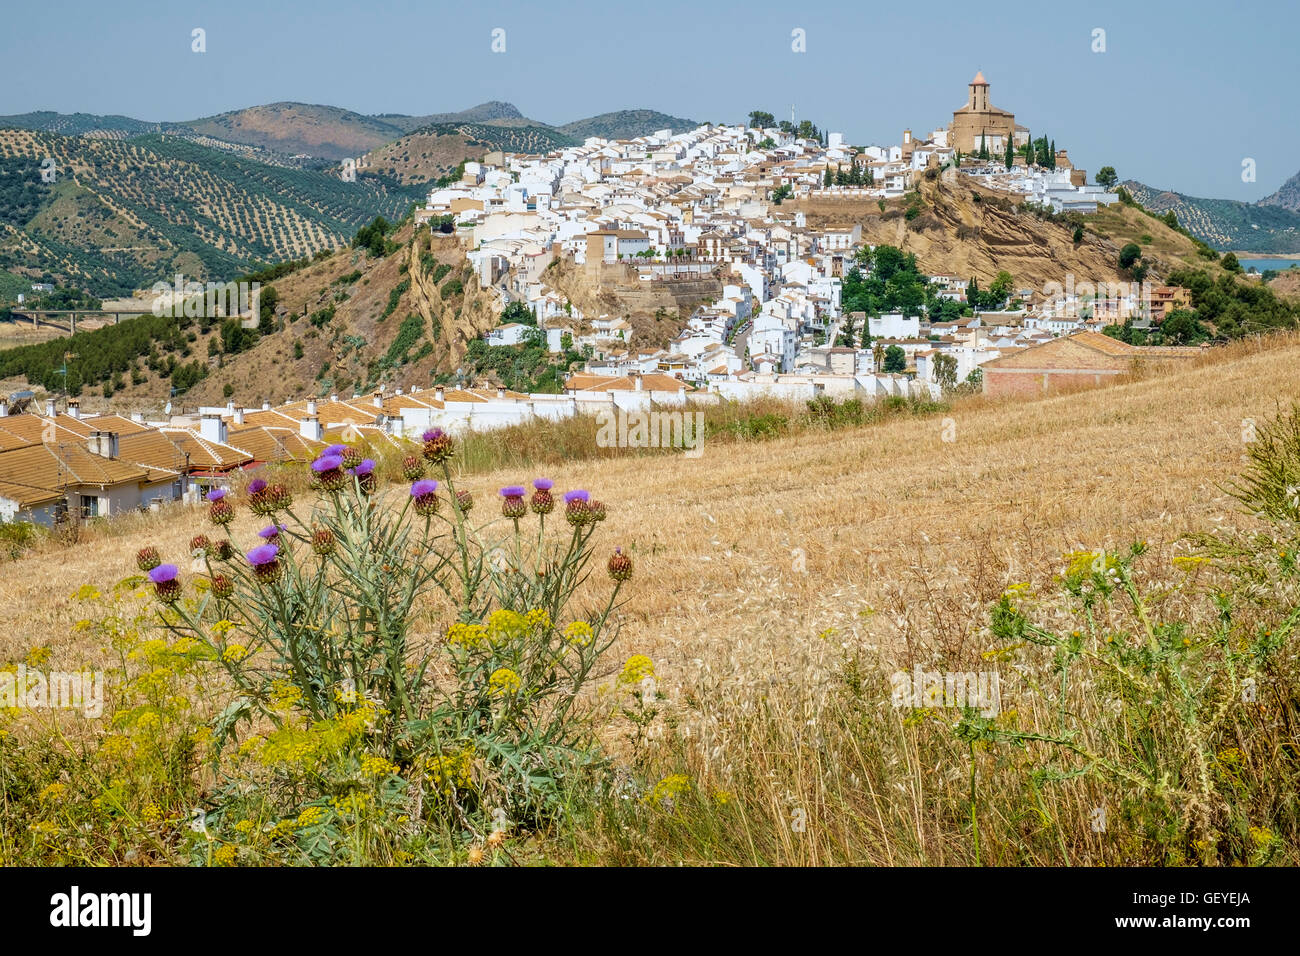 Iznajar pueblo visto desde el este. Andalucía, España Foto de stock